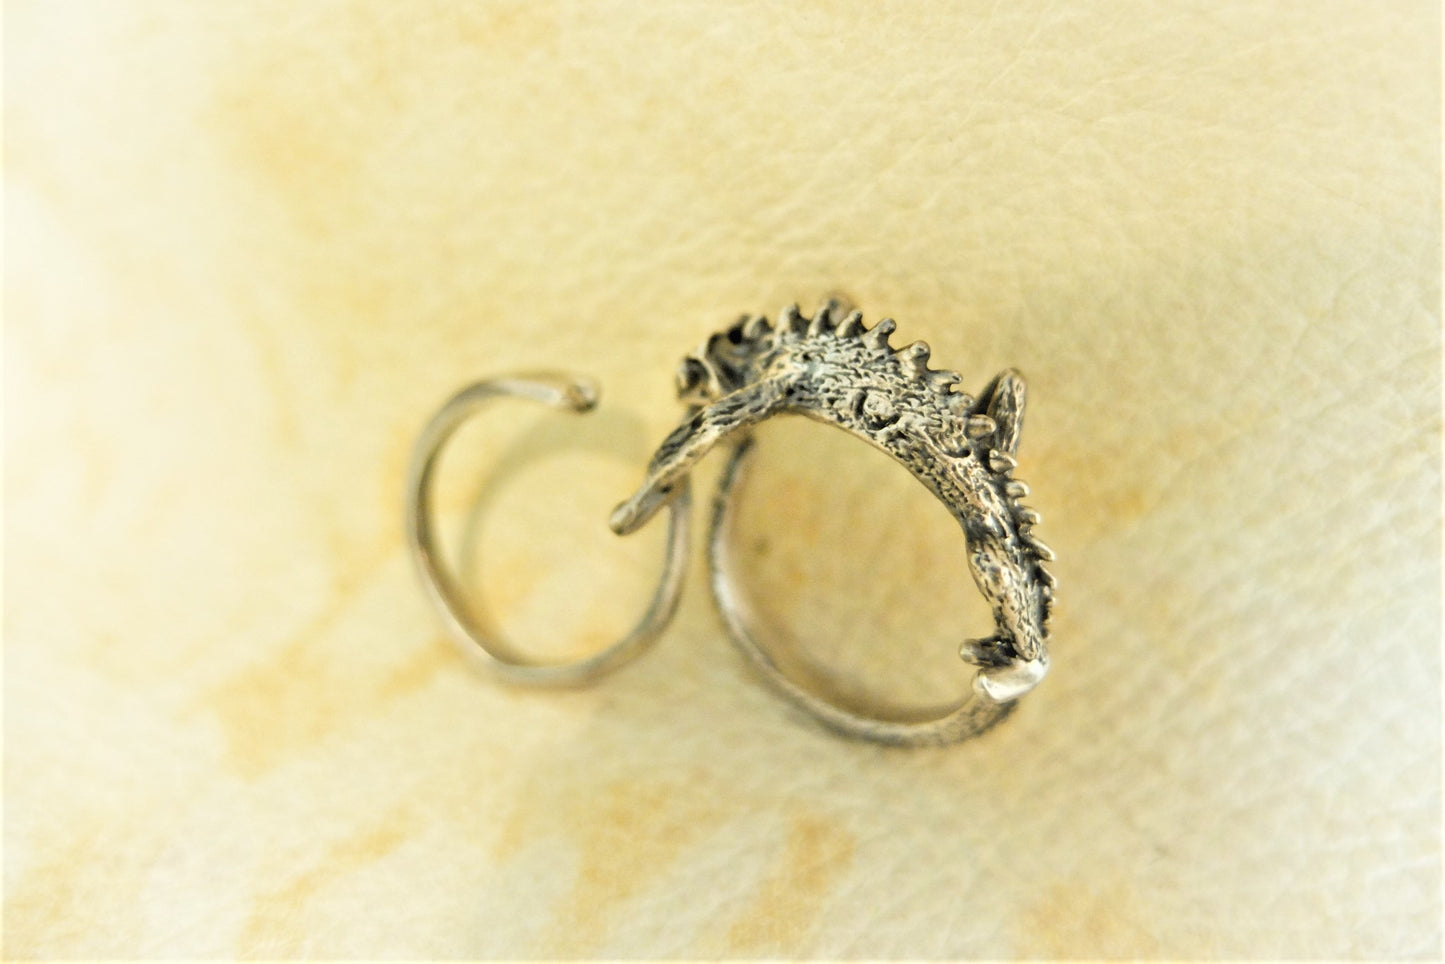 カメレオン2連リング( chameleon two finger ring)